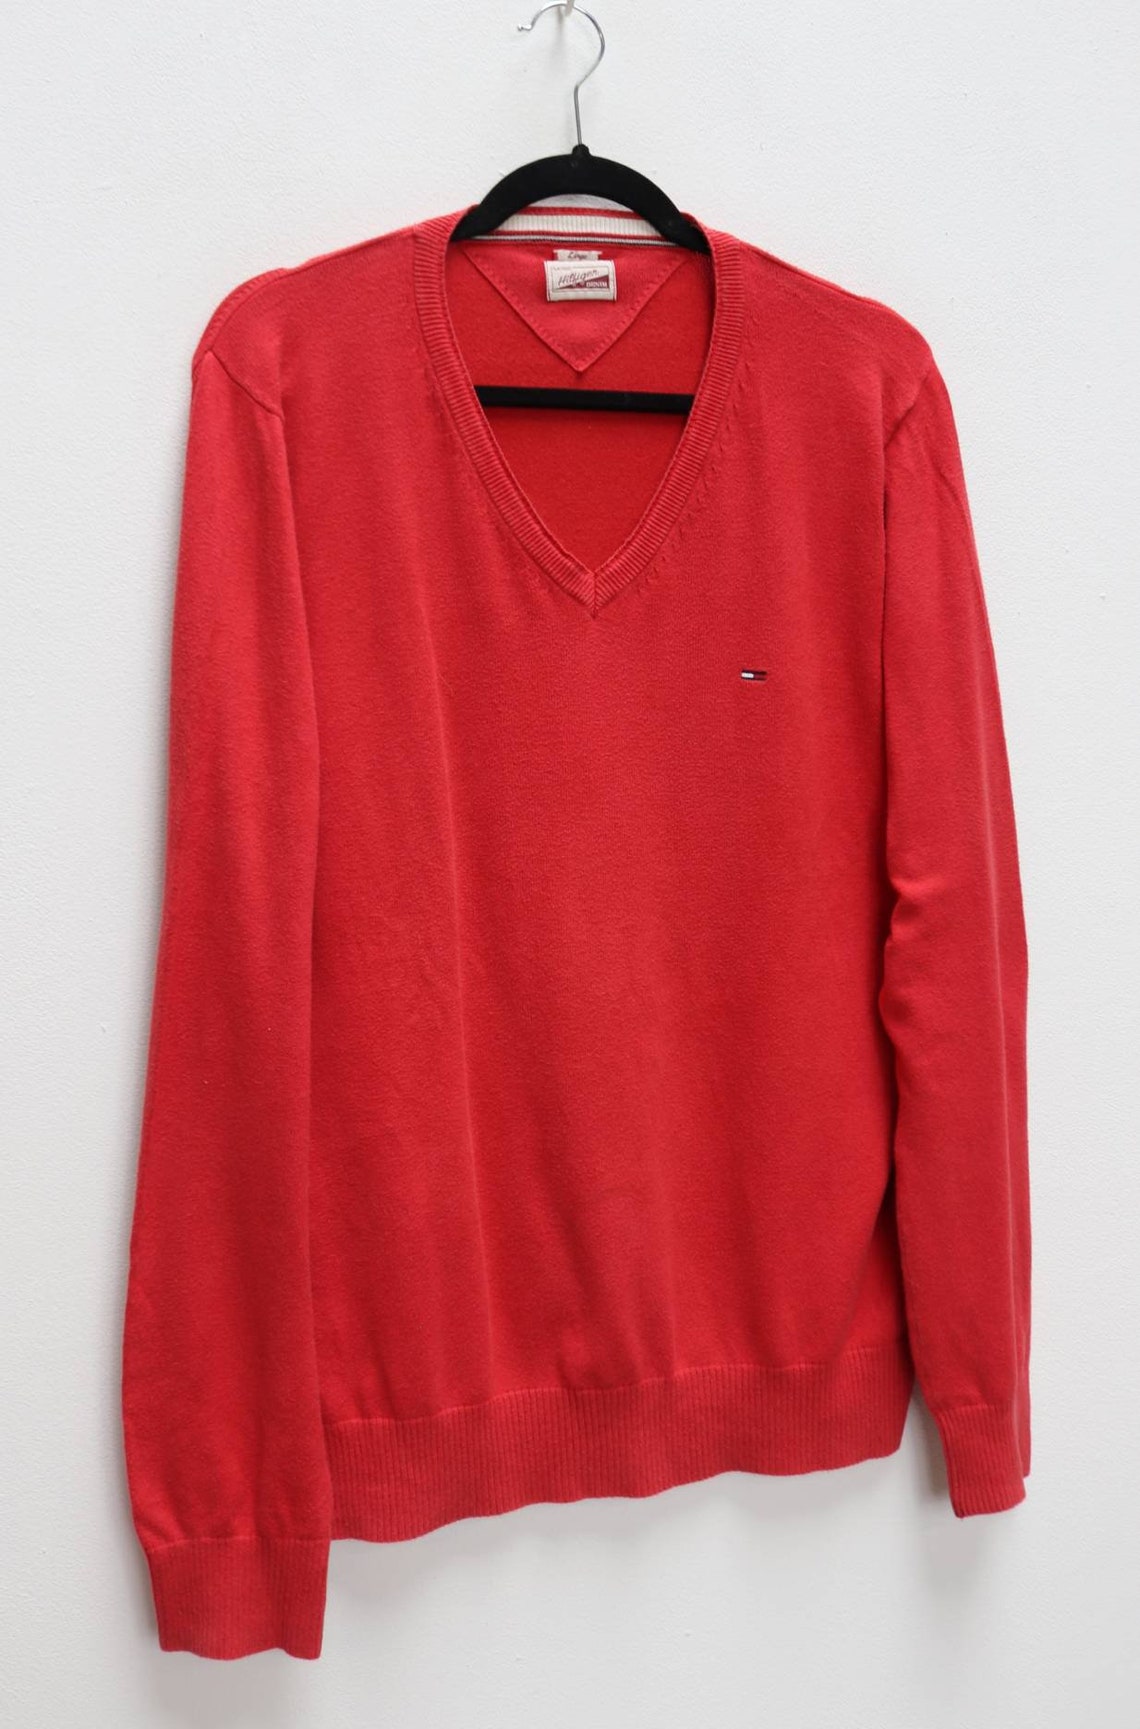 Tommy Hilfiger Jumper Vintage Sweater Red Jumper Tommy - Etsy UK